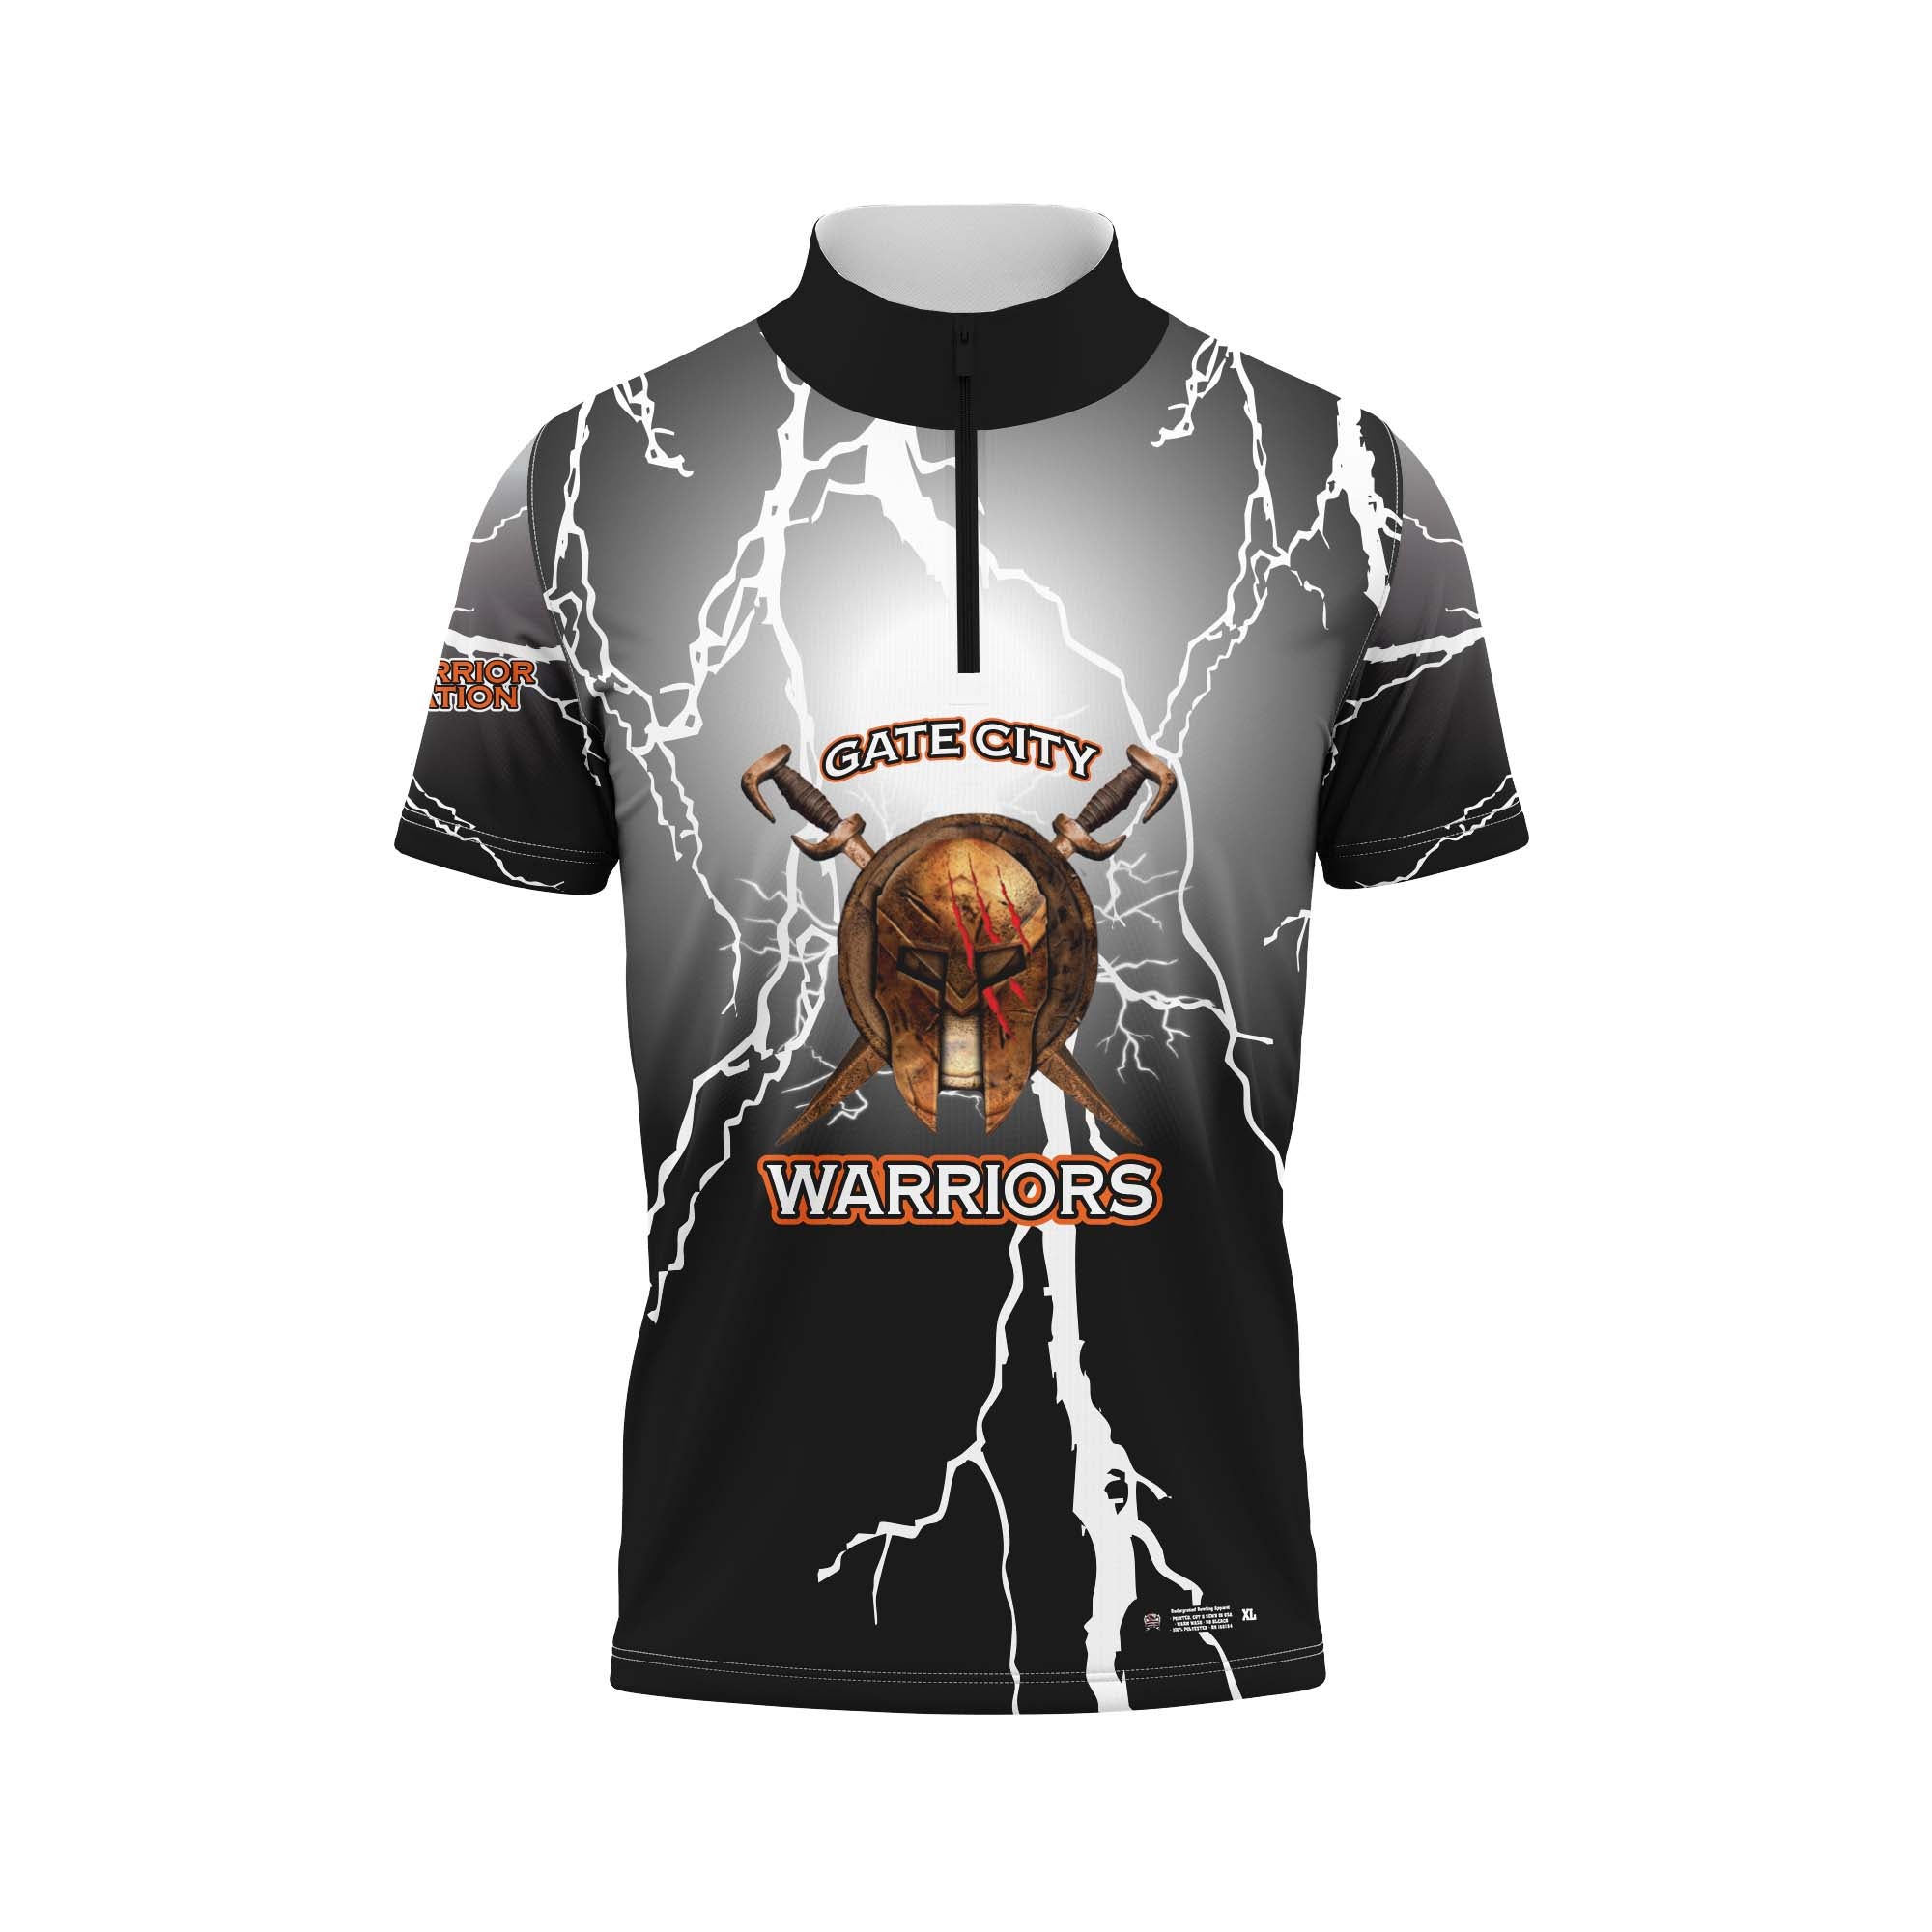 Gate City Warriors Lightning Jersey